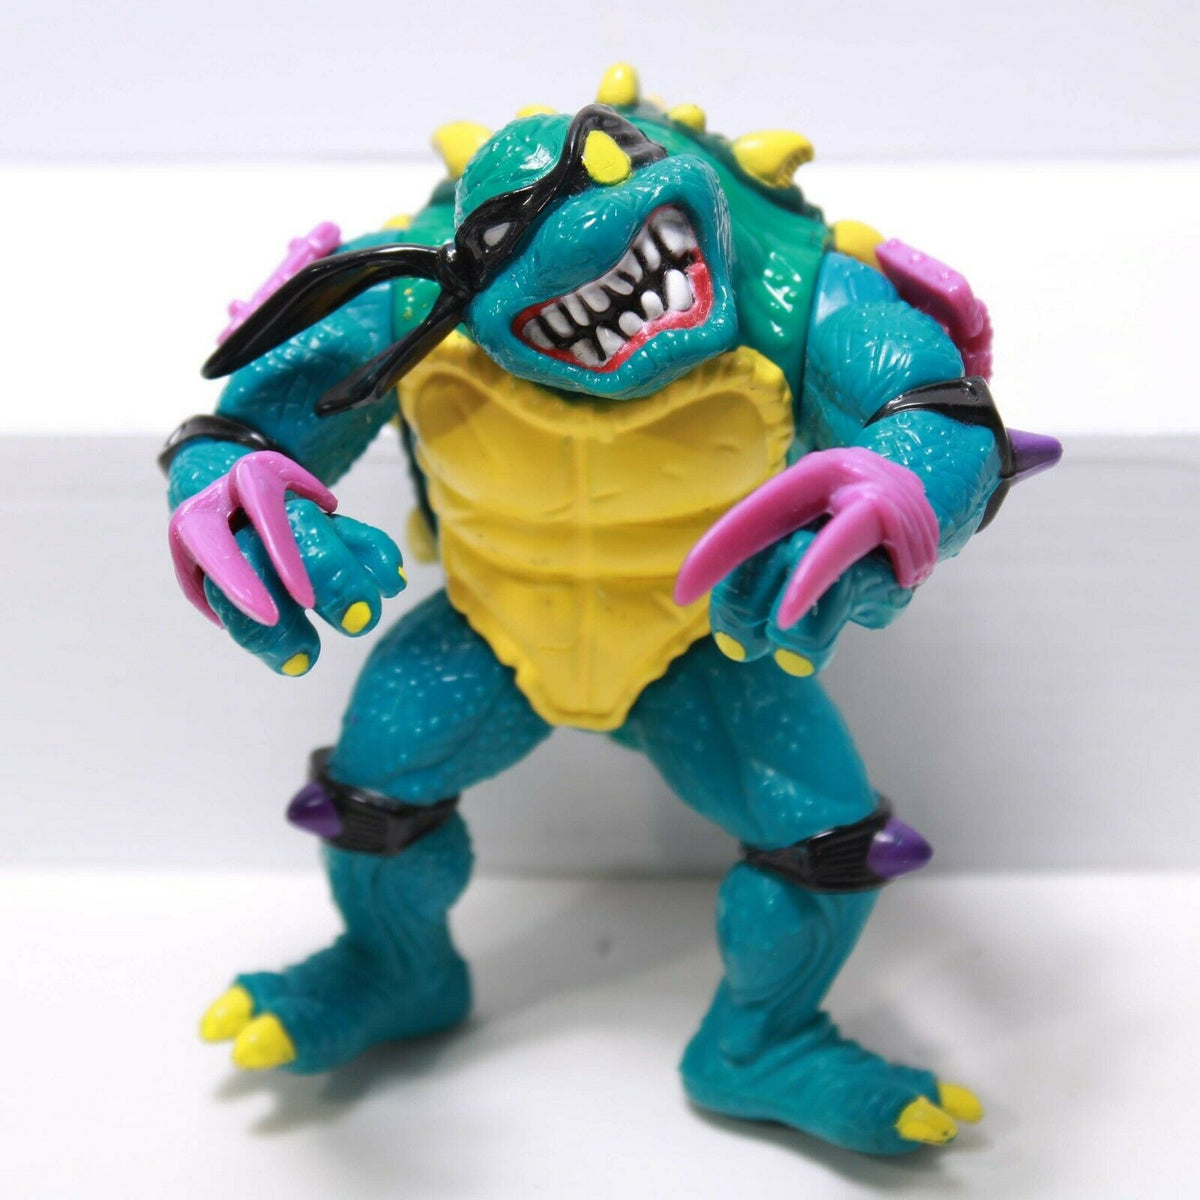 1990 Playmates Teenage Mutant Ninja Turtles Carded Action Figure - Slash